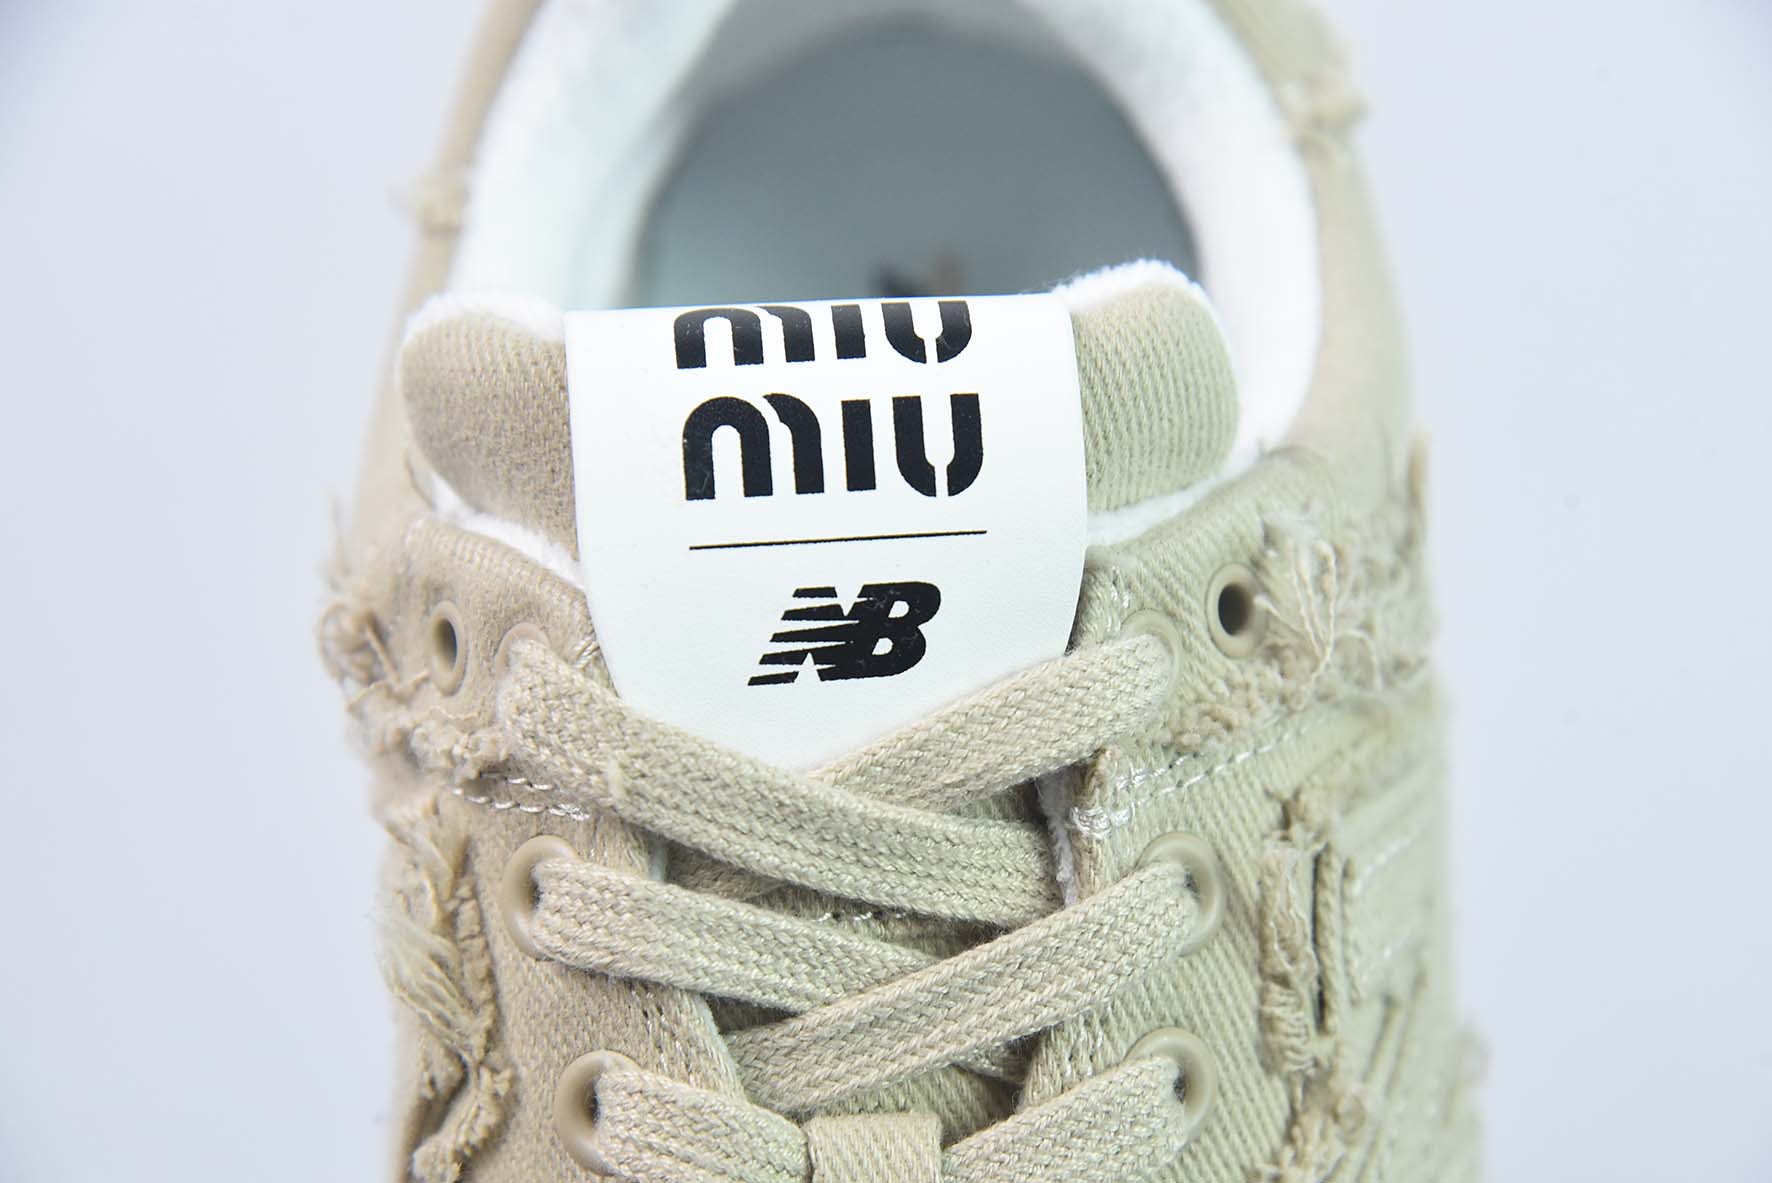 MIU MIU x NB 574 人气联名女款运动鞋